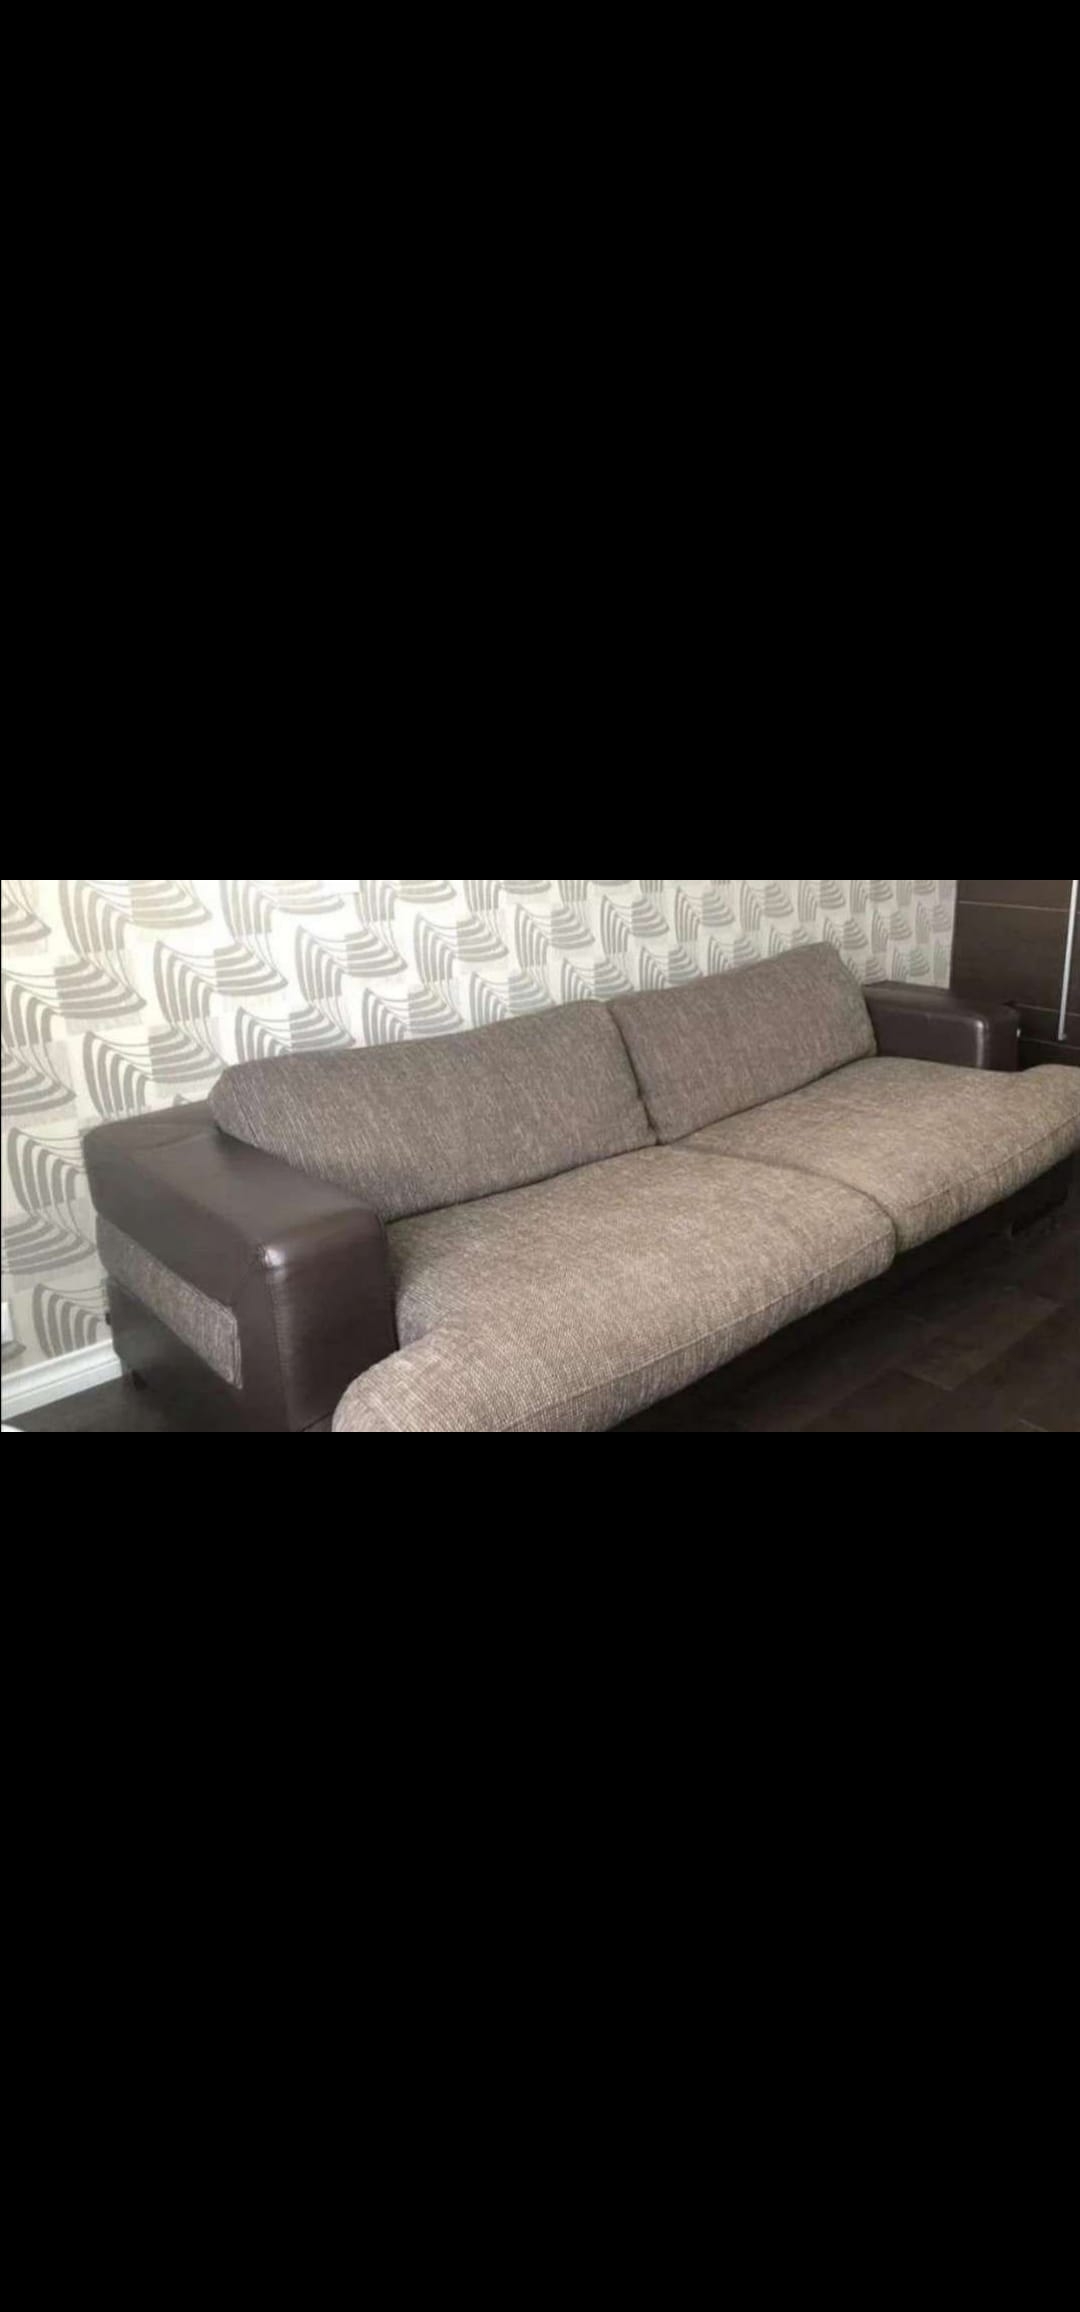 Помогите с наполнителем подушек для дивана - Мебельные ткани и мягкиенаполнители - Форум мебельщиков